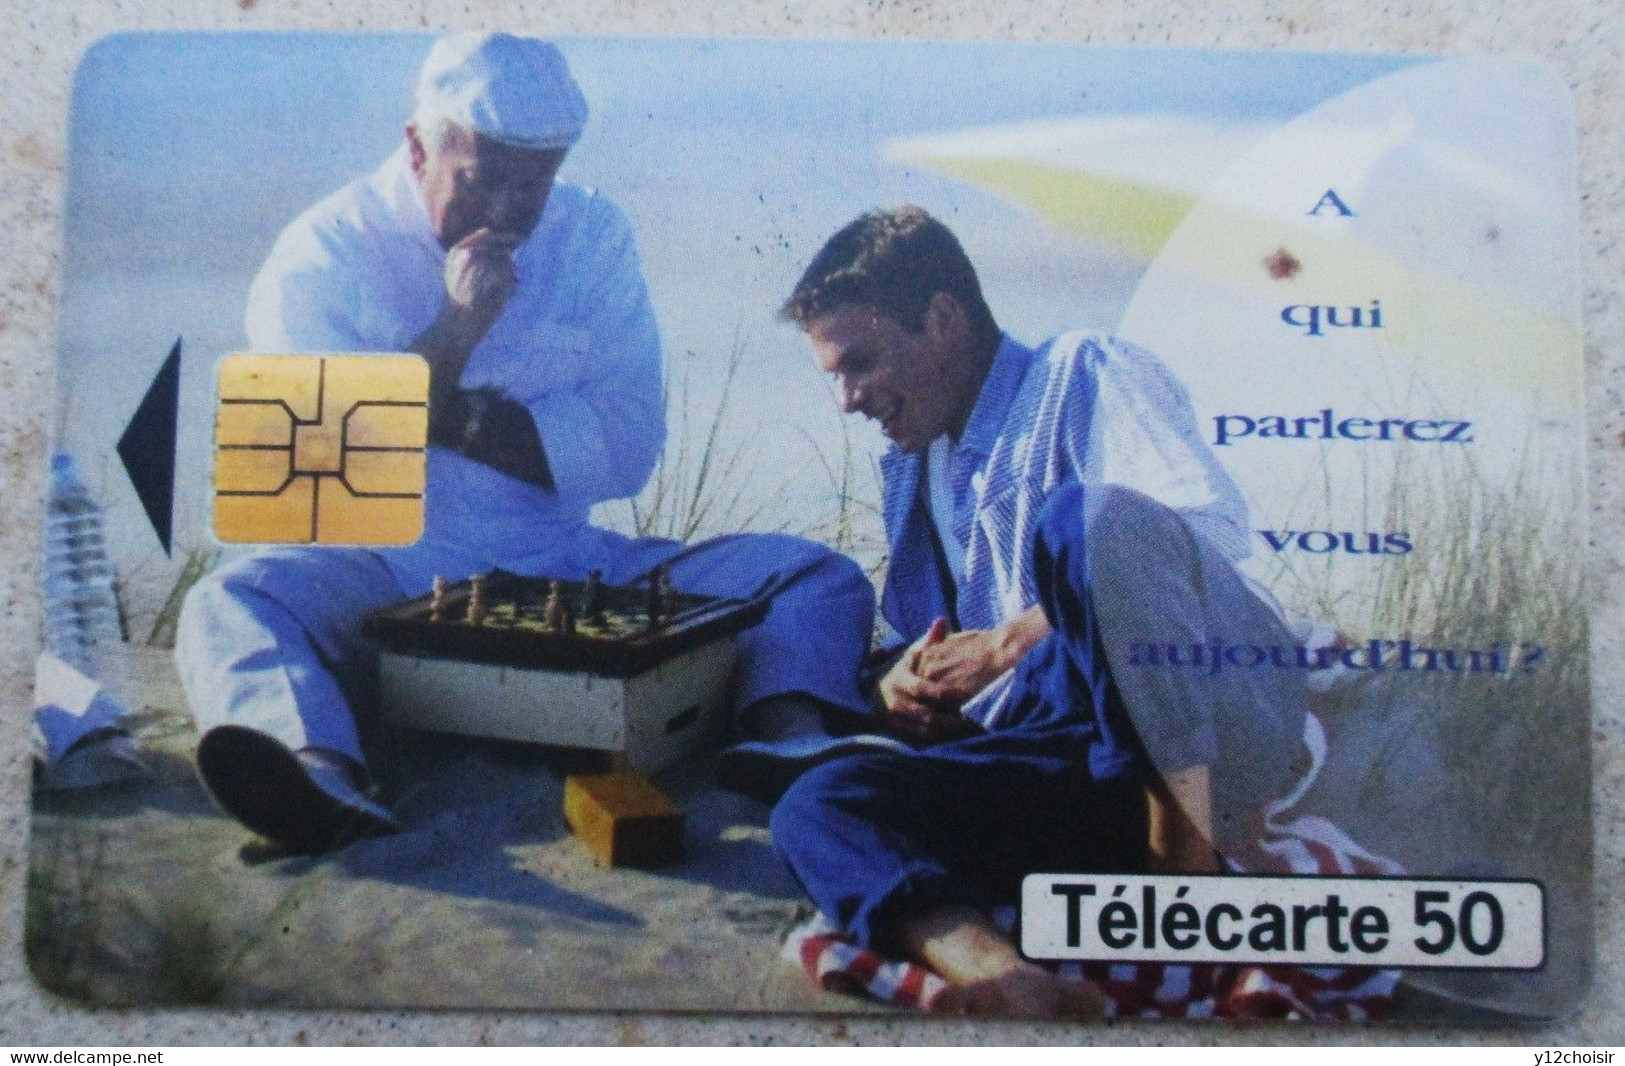 Télécarte 50 Joueurs Jeux D' échecs 1998 500 000 Ex FRANCE TELECOM - Spiele